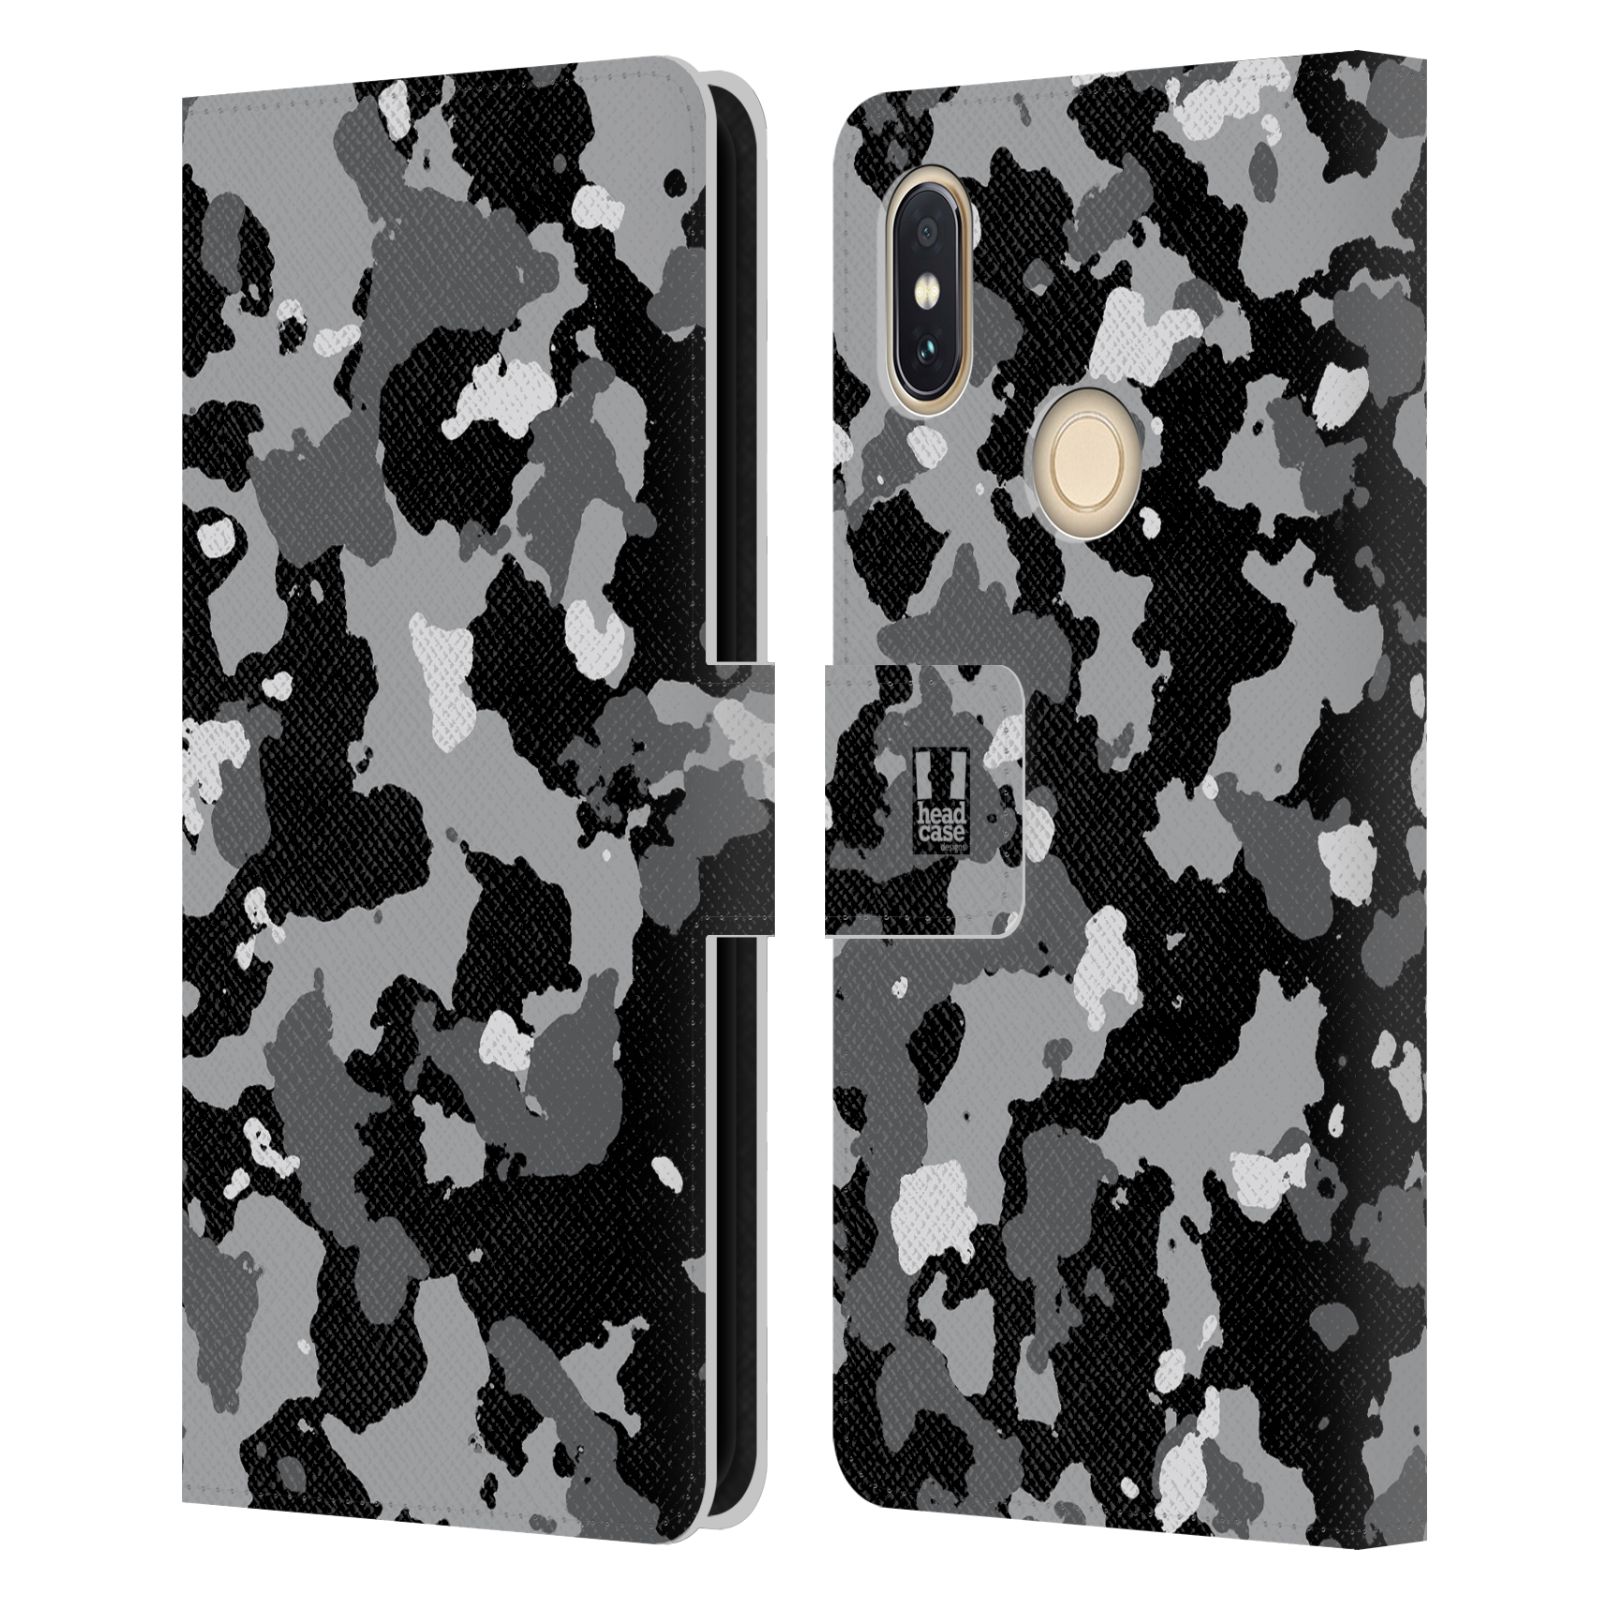 Pouzdro na mobil Xiaomi Redmi S2 - Head Case - kamuflaž černá a šedá